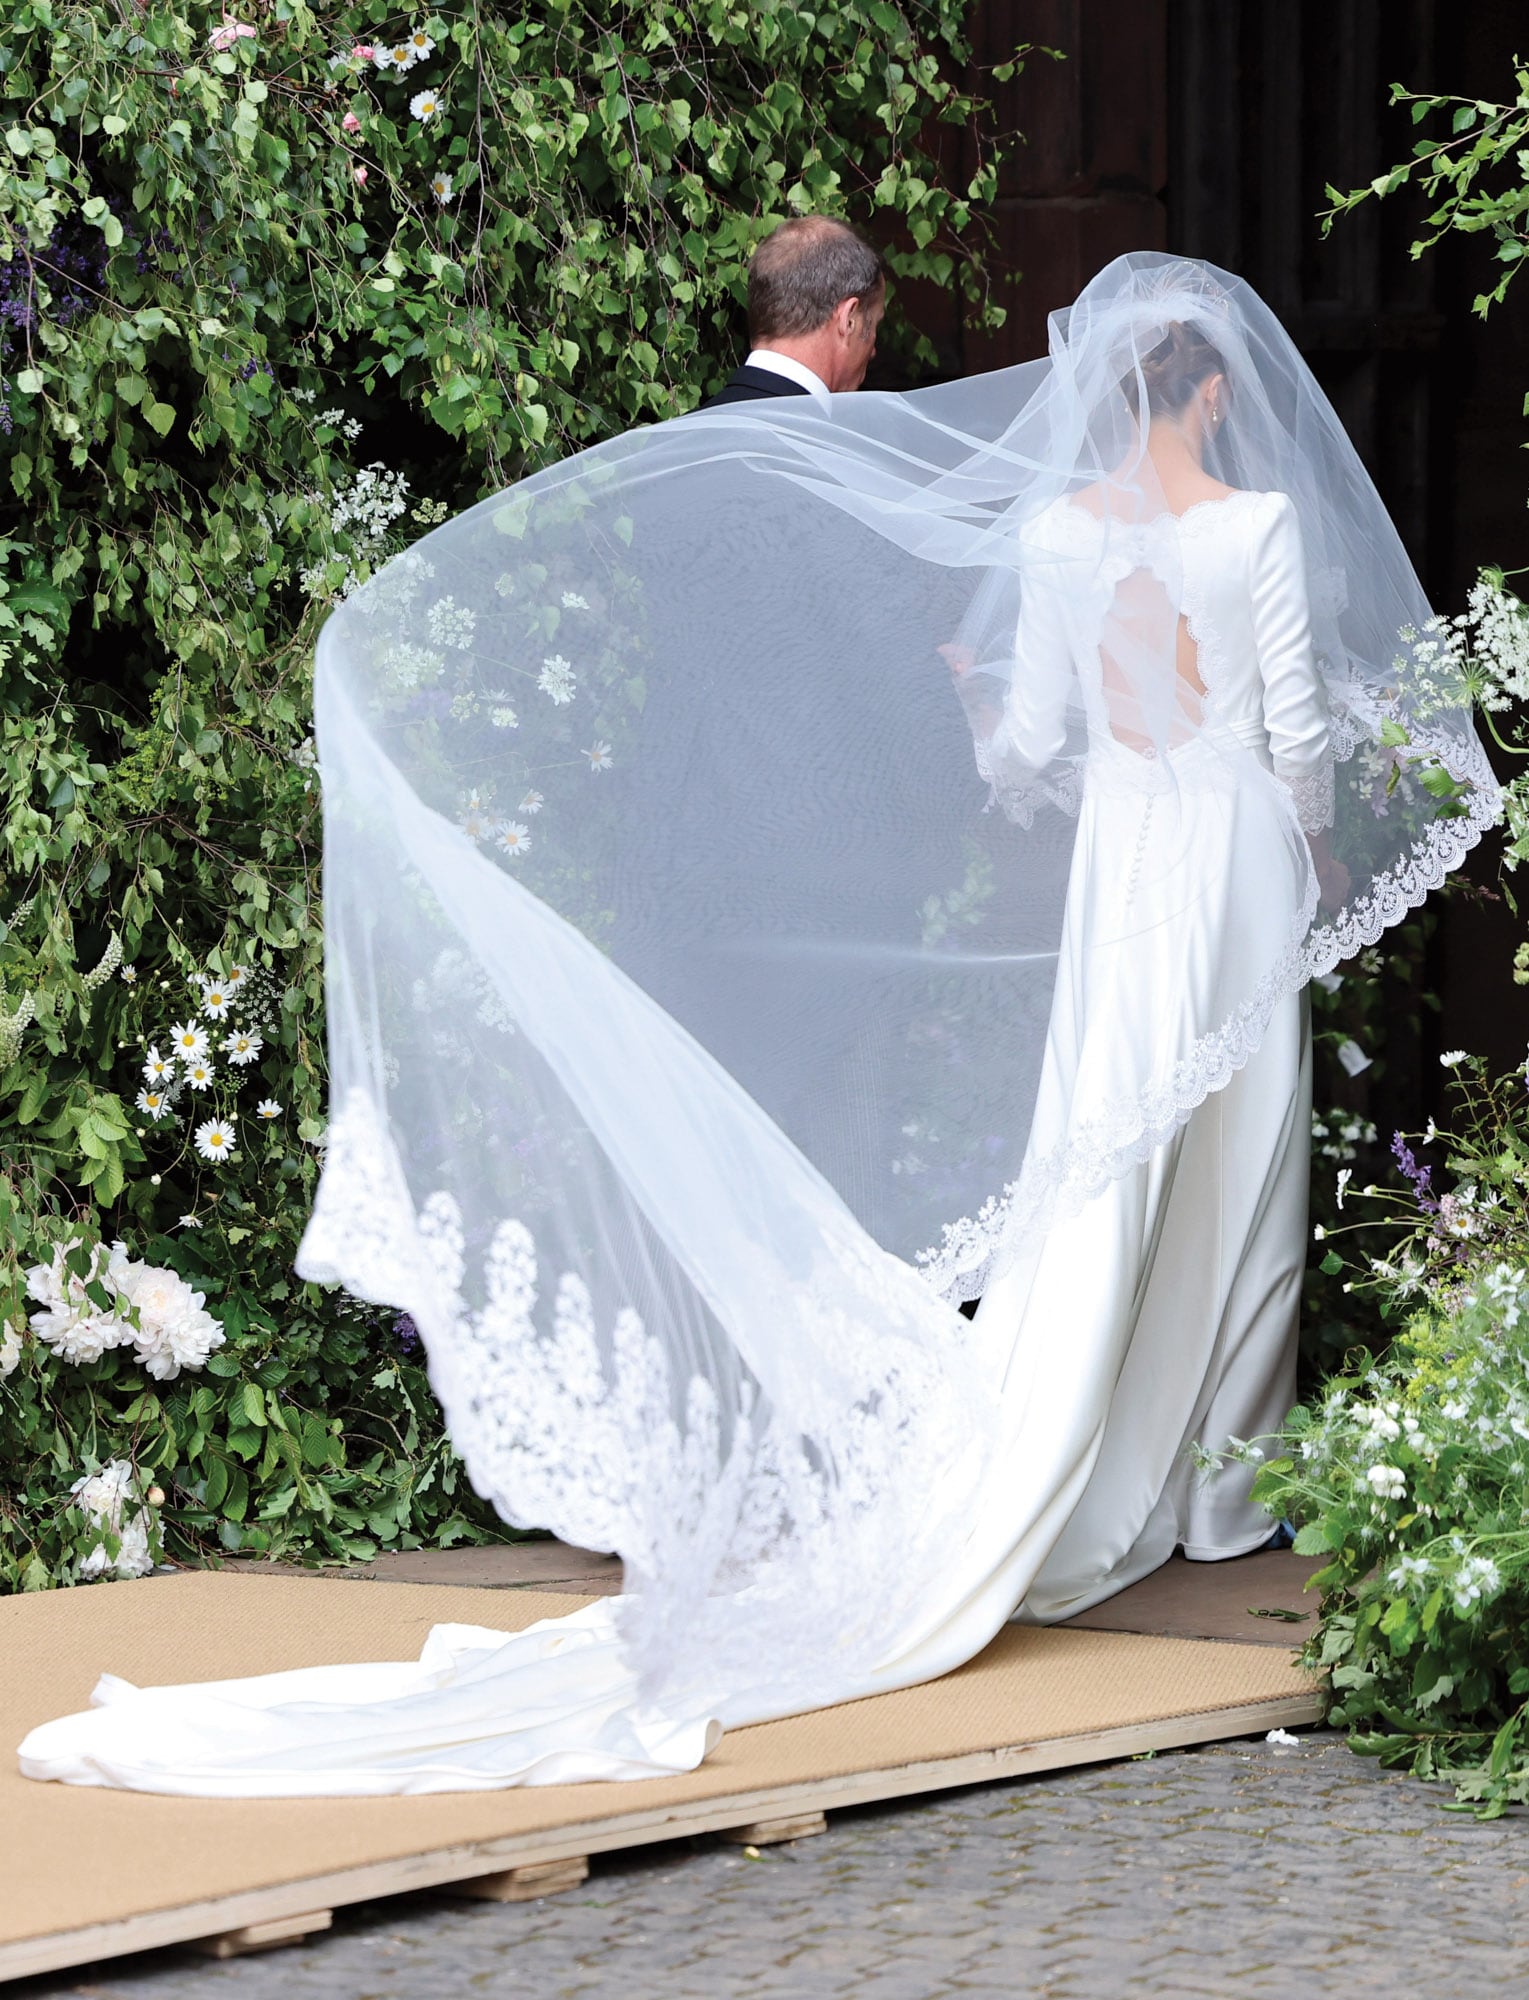 La novia ingresa del brazo de su padre, Ruper Henson. Una imagen, ayudada por el viento que hace volar el velo, que parece salida de una pelicula romántica. 
